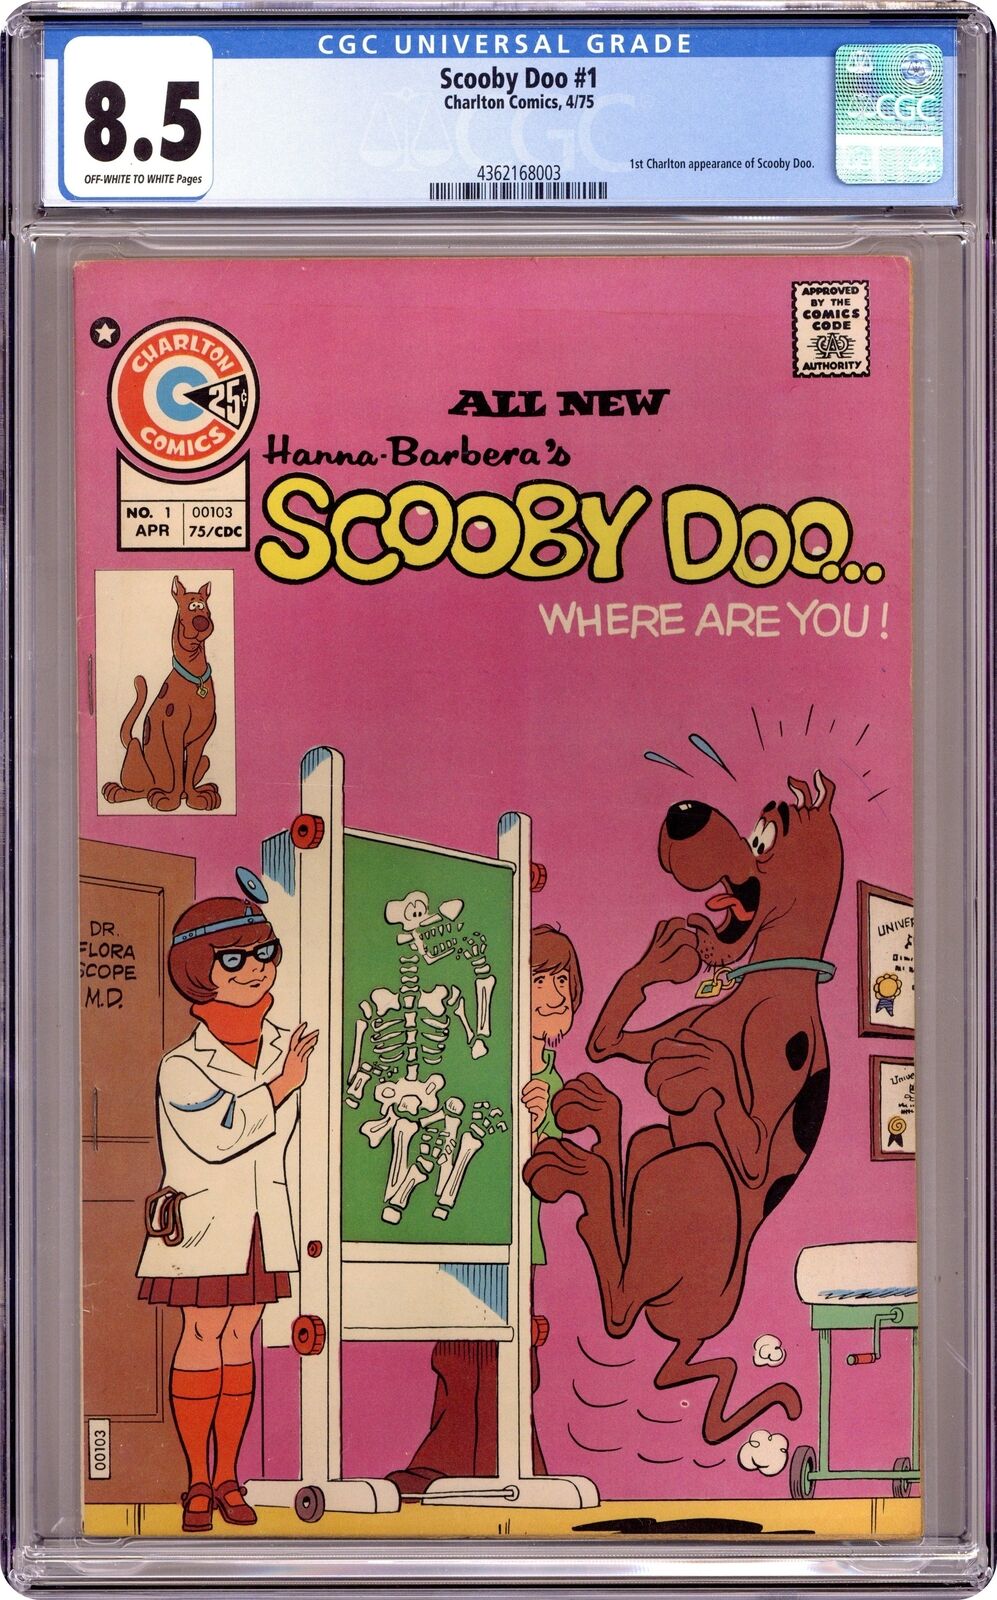 Scooby Doo #1 CGC 8.5 1975 4362168003